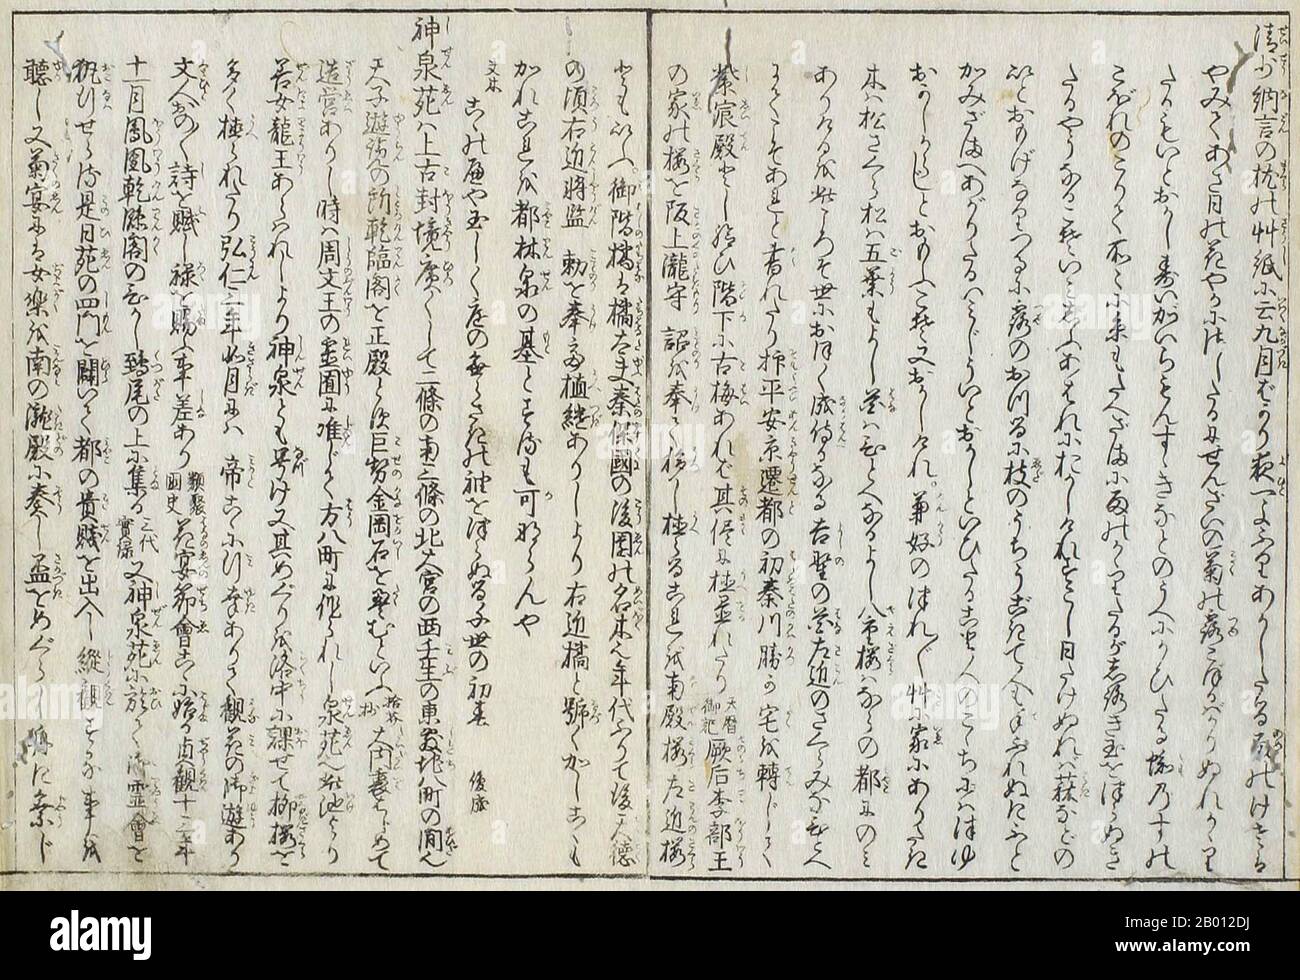 Japan: Handgeschriebener japanischer Text aus dem 12. Jahrhundert Makura no Soshi oder das „Kissenbuch“ der Heian Hofdame und gefeierten Schriftstellerin sei Shonagon. Sei Shonagon (c. 966-1017) war eine japanische Autorin und Hofdame, die um das Jahr 1000 während der mittleren Heian-Zeit der Kaiserin tishi (Kaiserin Sadako) diente und am besten als Autor des Kissenbuches „Makura no Soshi“ bekannt ist. Berühmt wurde sie durch ihre Arbeit The Pillow Book, eine Sammlung von Listen, Klatsch, Poesie, Beobachtungen, Beschwerden und allem, was sie während ihrer Jahre vor Gericht für interessant hielt. Stockfoto